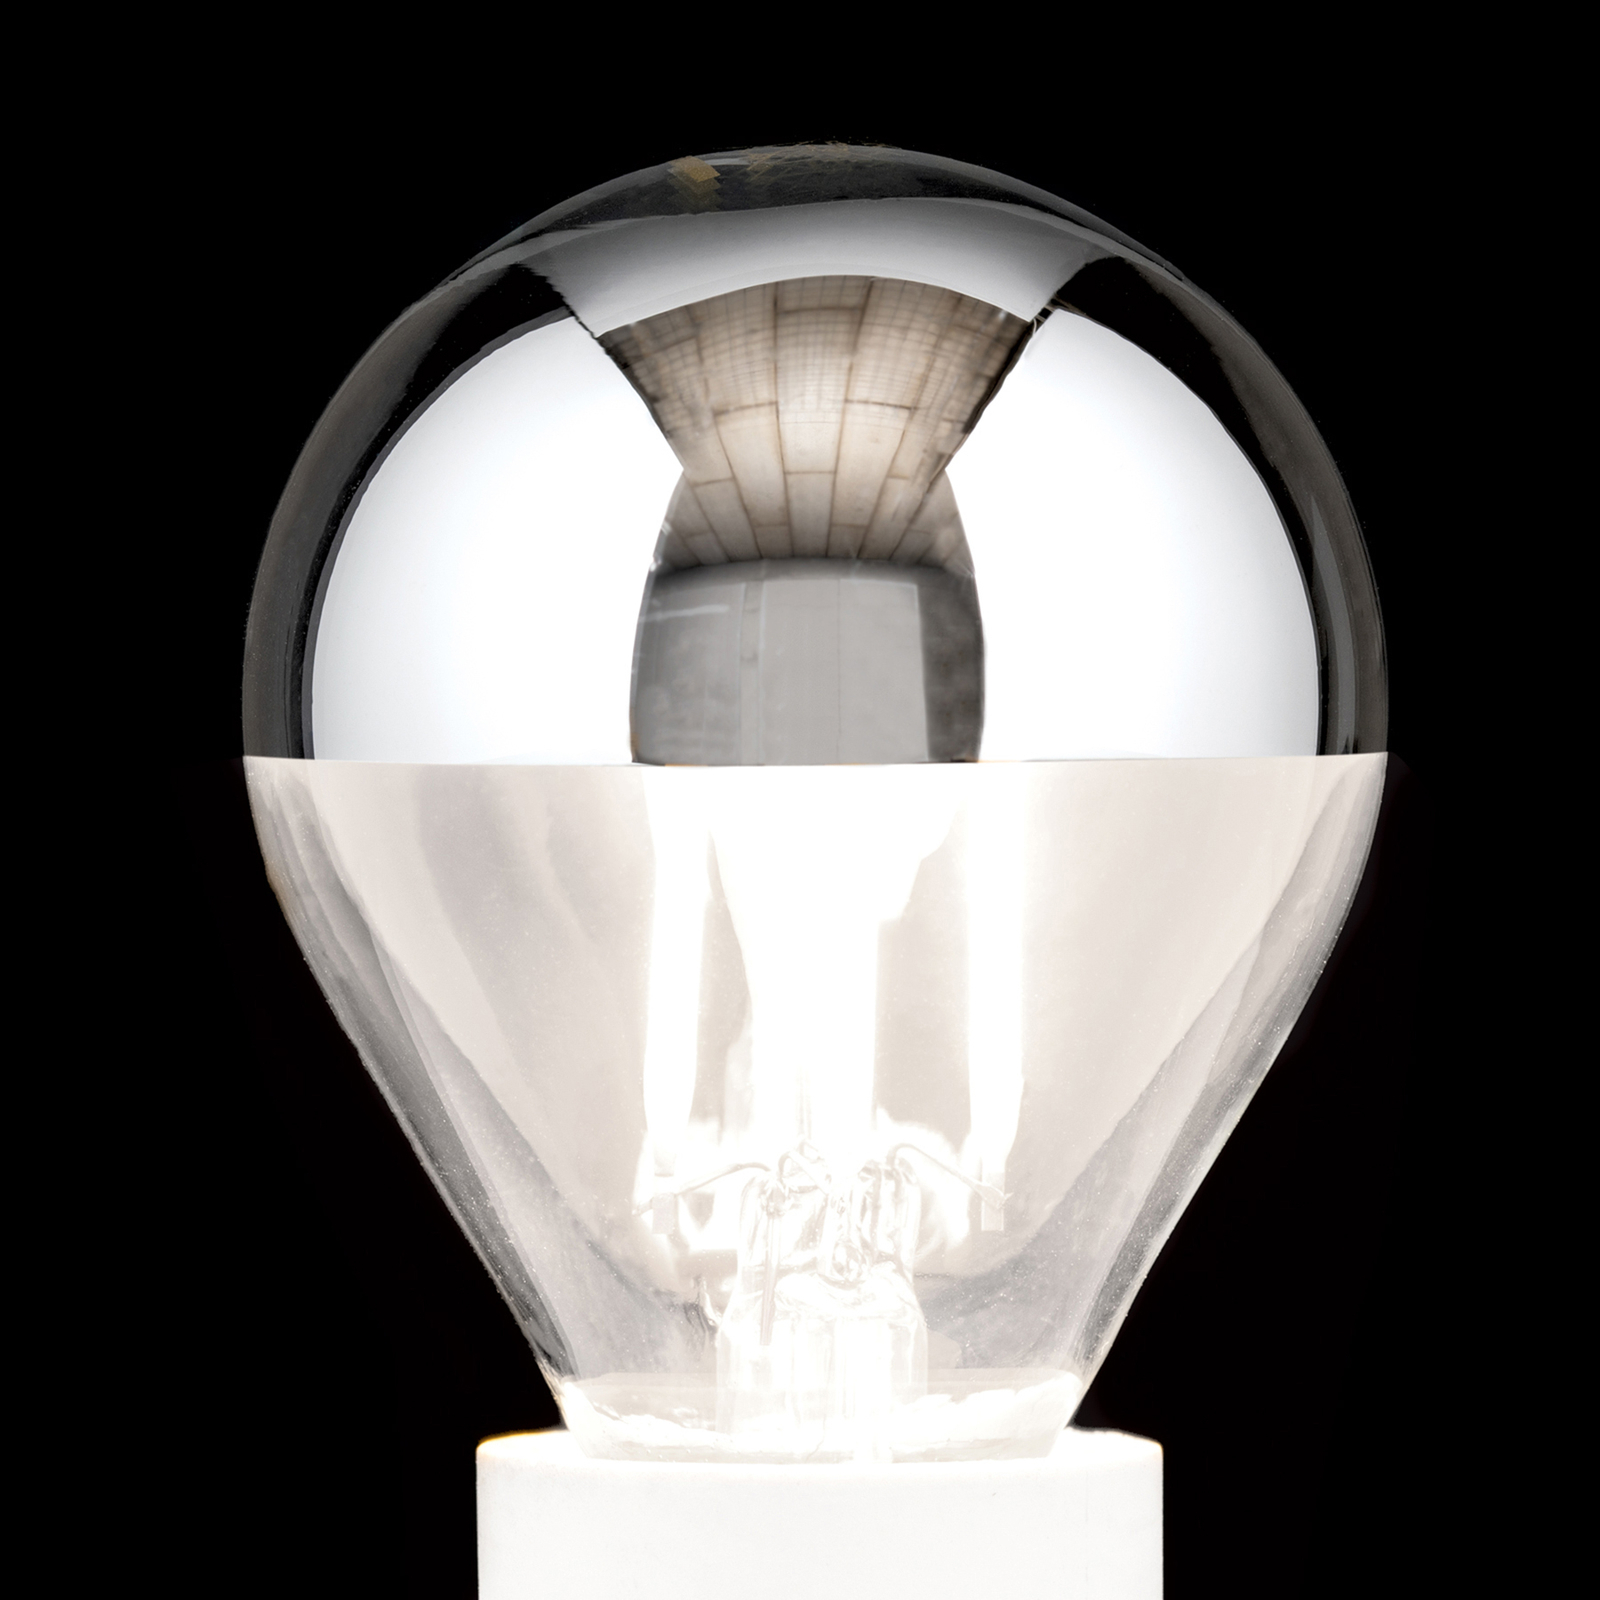 LED veidrodinė LED lempa E14 4W šiltai balta, reguliuojamo ryškumo